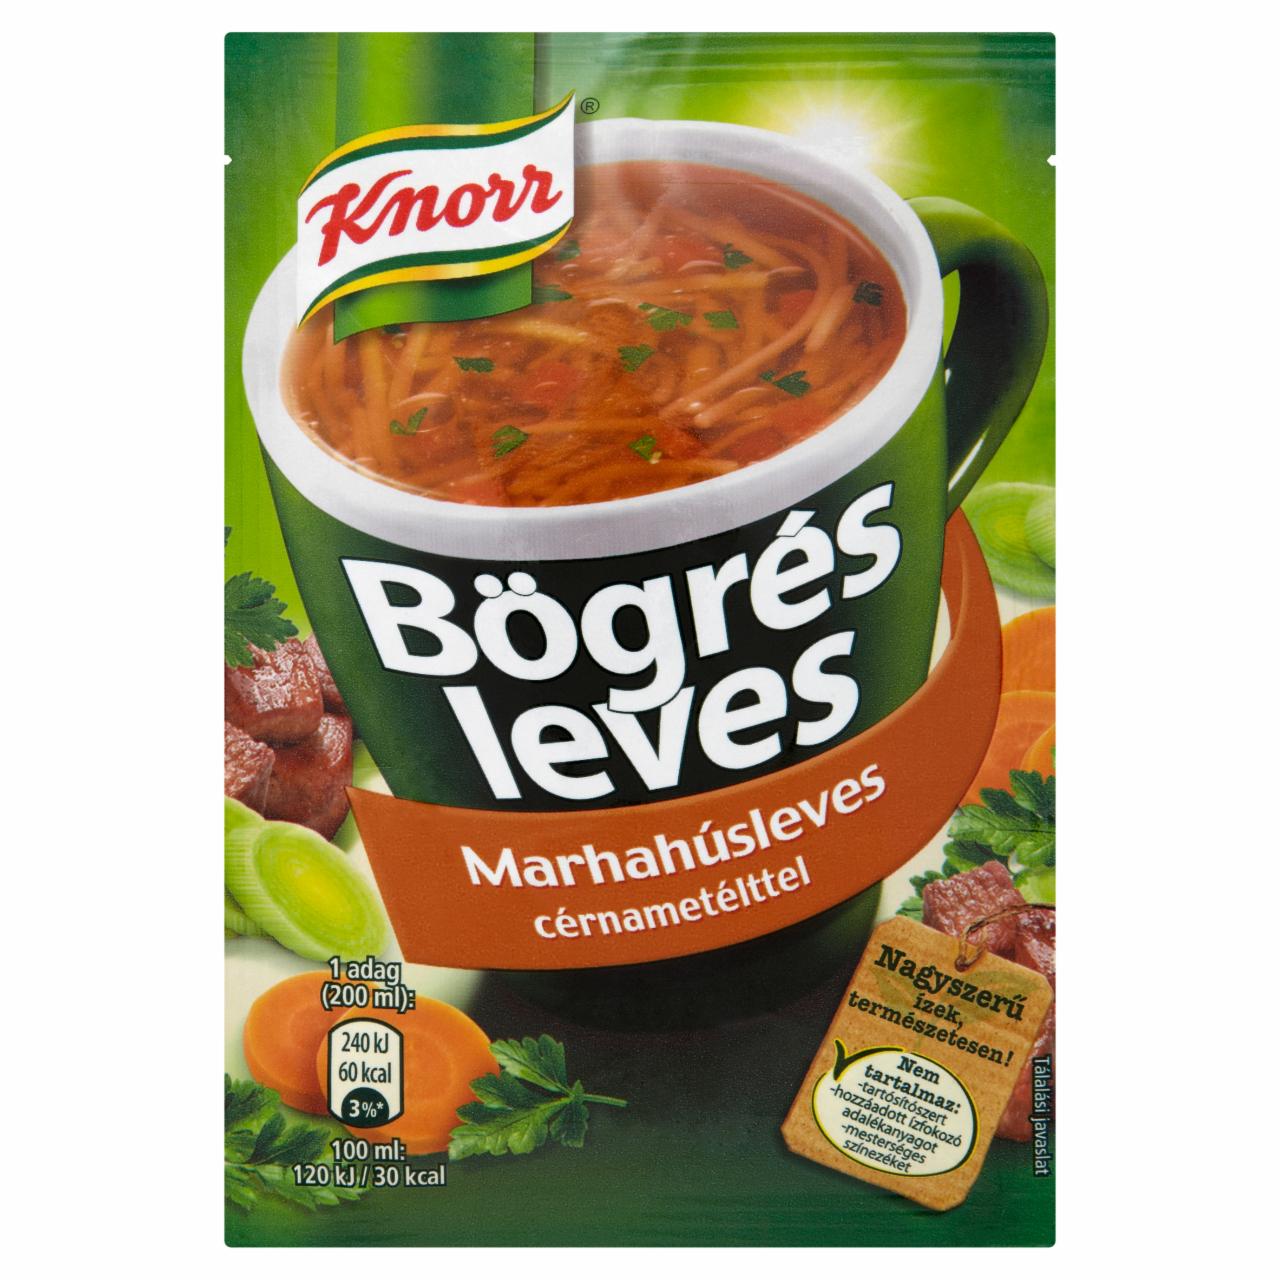 Képek - Knorr Bögrés Leves marhahúsleves cérnametélttel 14 g